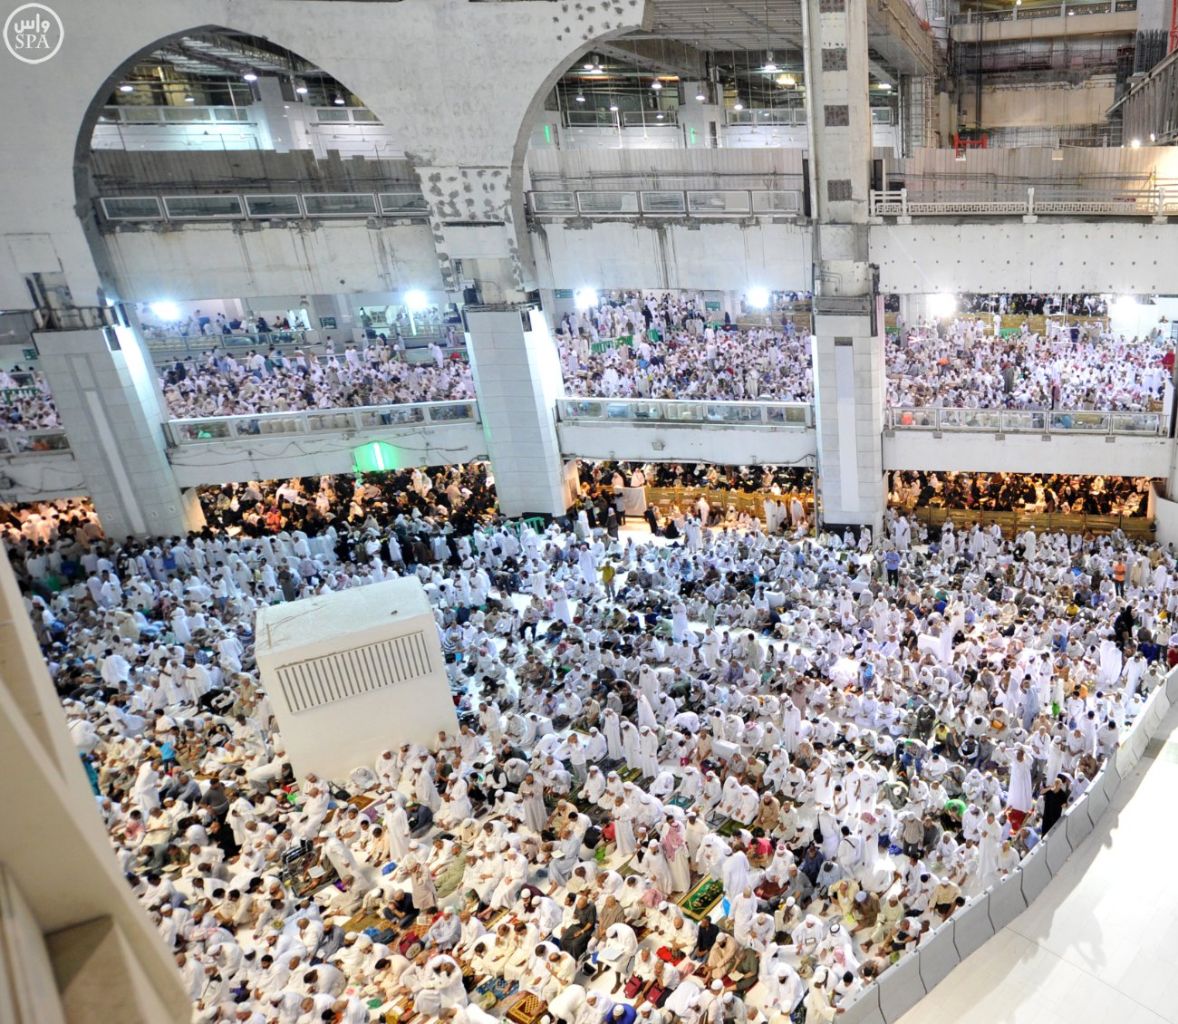 Bagaimana suasana di Masjidil Haram pada malam 27 Ramadhan? Berikut 